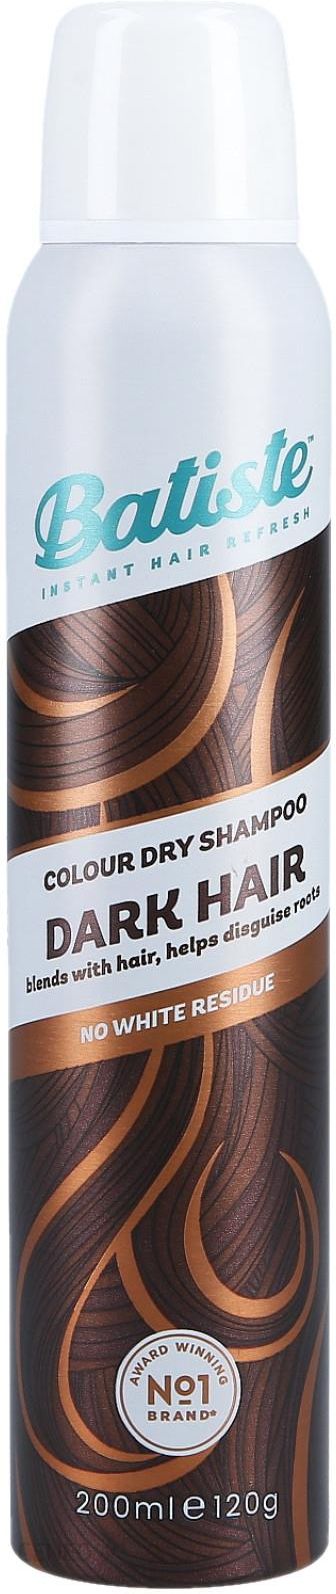 suchy szampon do włosów brązowych